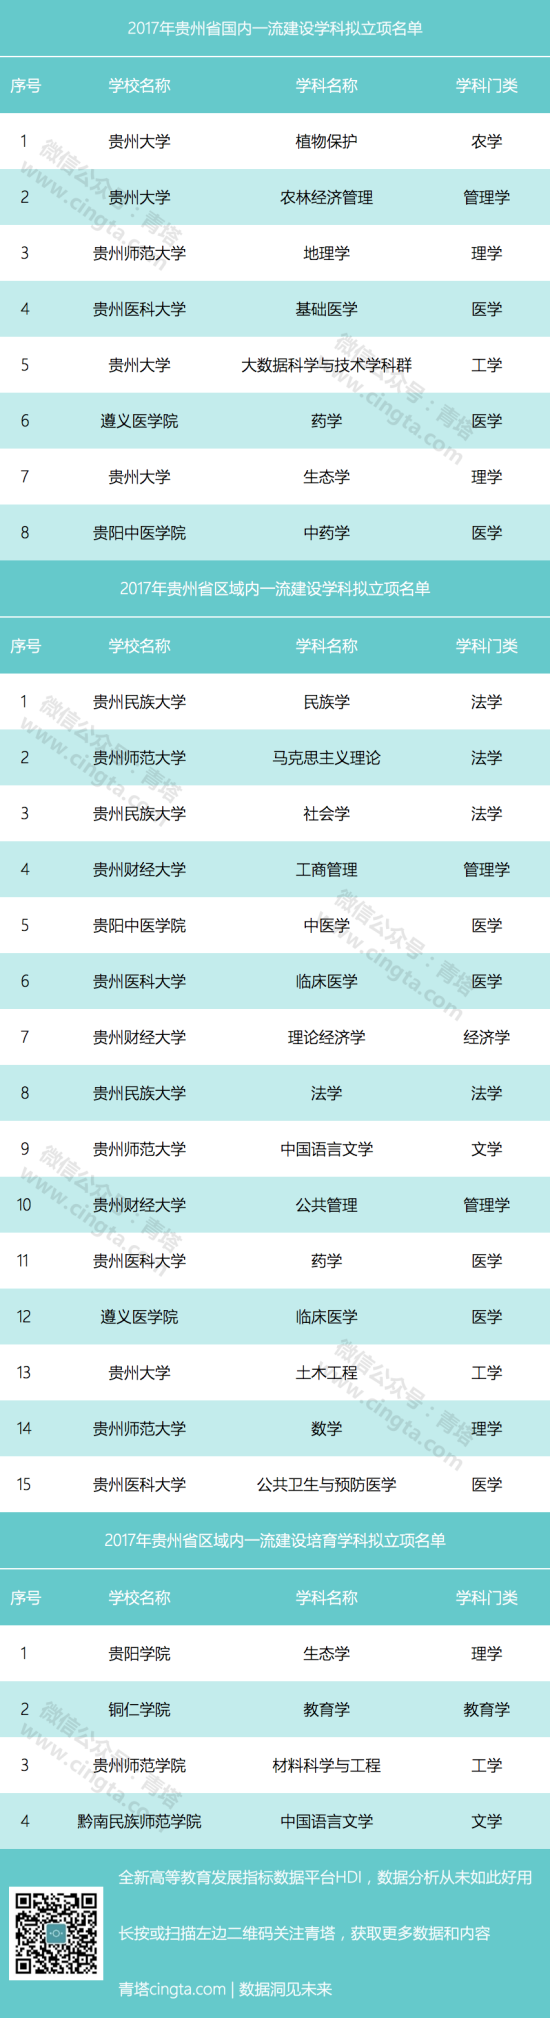 贵州省2017年一流学科建设名单出炉1